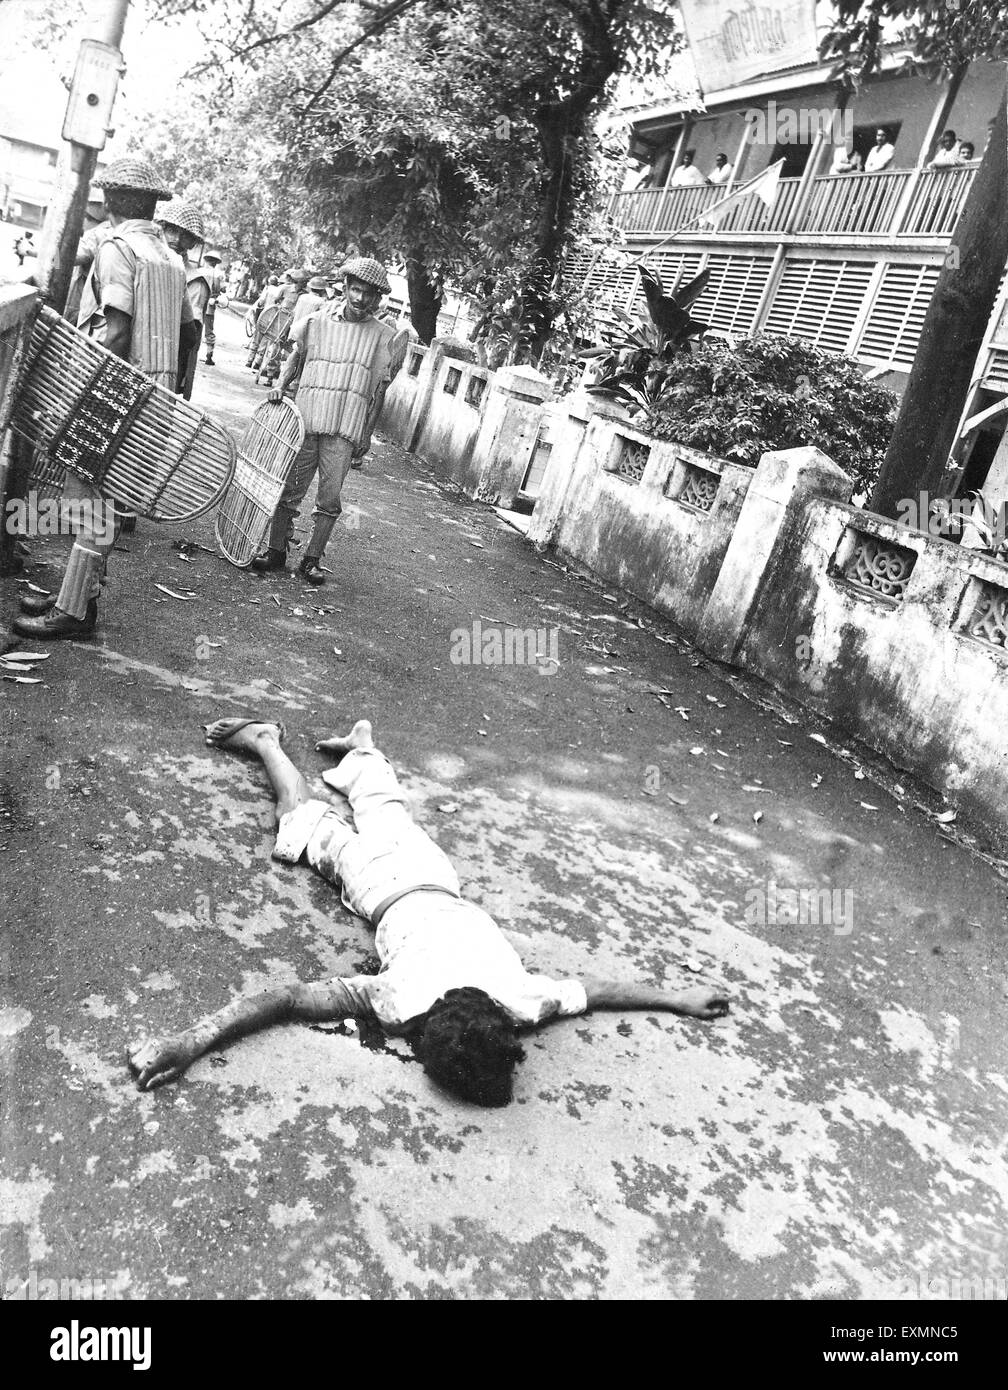 Homme tué la police rencontre Bombay Mumbai Maharashtra Inde Banque D'Images